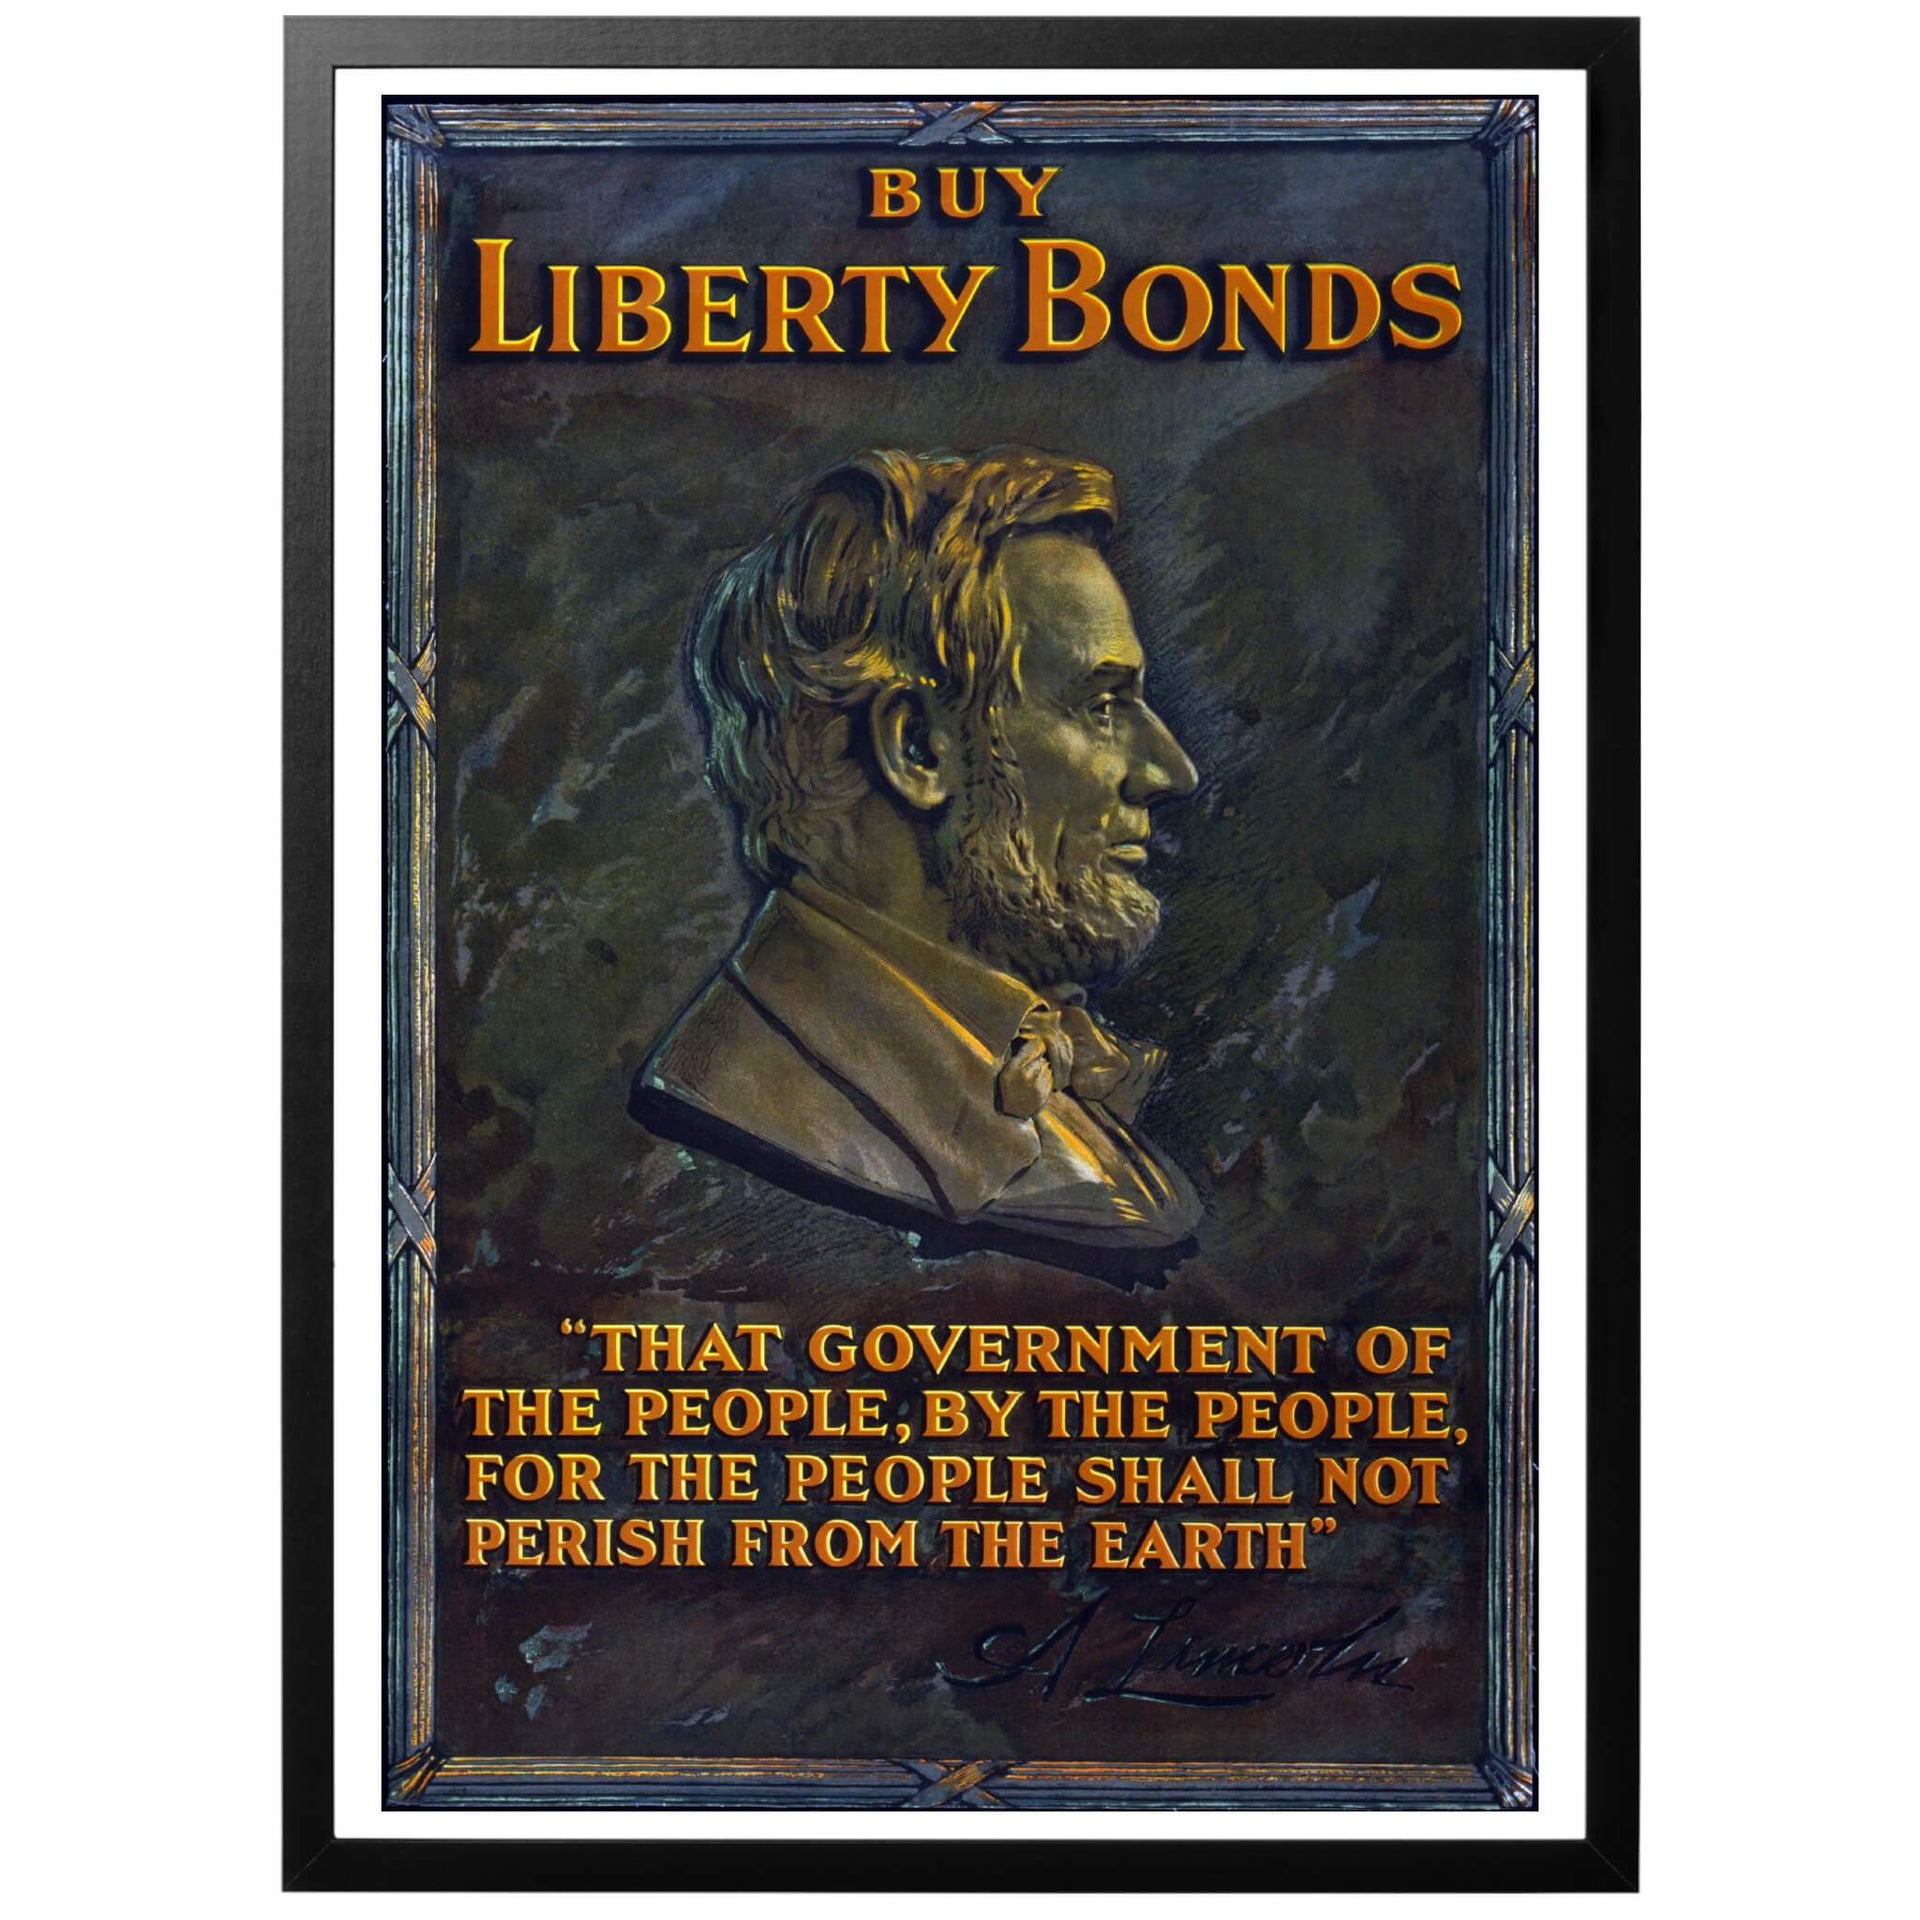 Buy Liberty Bonds "Köp frihetsobligationer" Amerikansk WWI affisch - Amerikansk affisch publicerad 1917. Affischen gör reklam för krigsobligationer, här kallade "Liberty Bonds" (frihetsobligationer). Avbildad på affischen är Abraham Lincoln samt ett utdrag ur hans kända tal vid Gettysburg. 